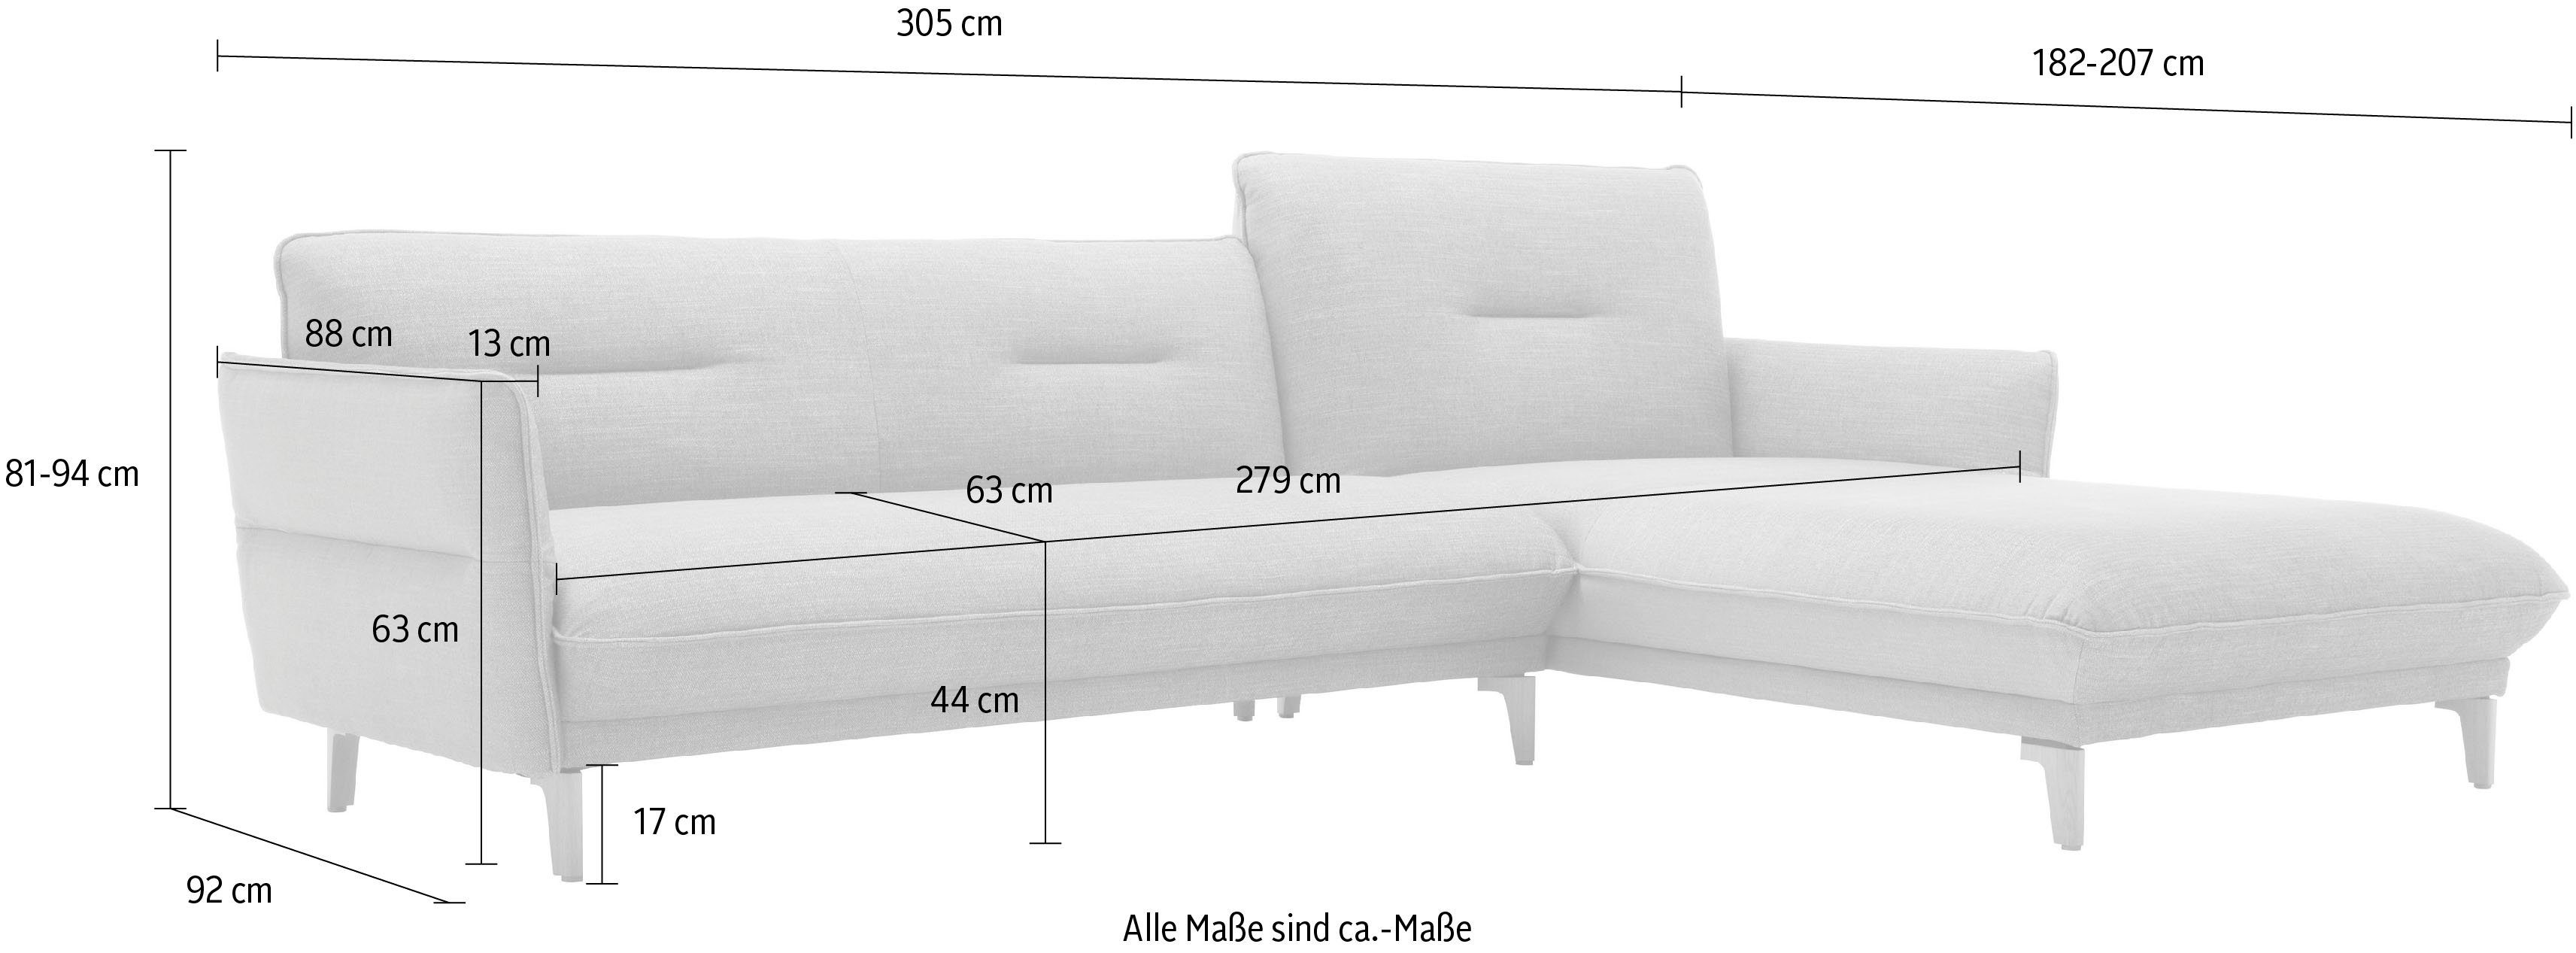 305 hs.430, sofa mit cm Breite - Neigefunktion, ozeanblau 062 hülsta Recamiere Rücken 72 hoher Ecksofa